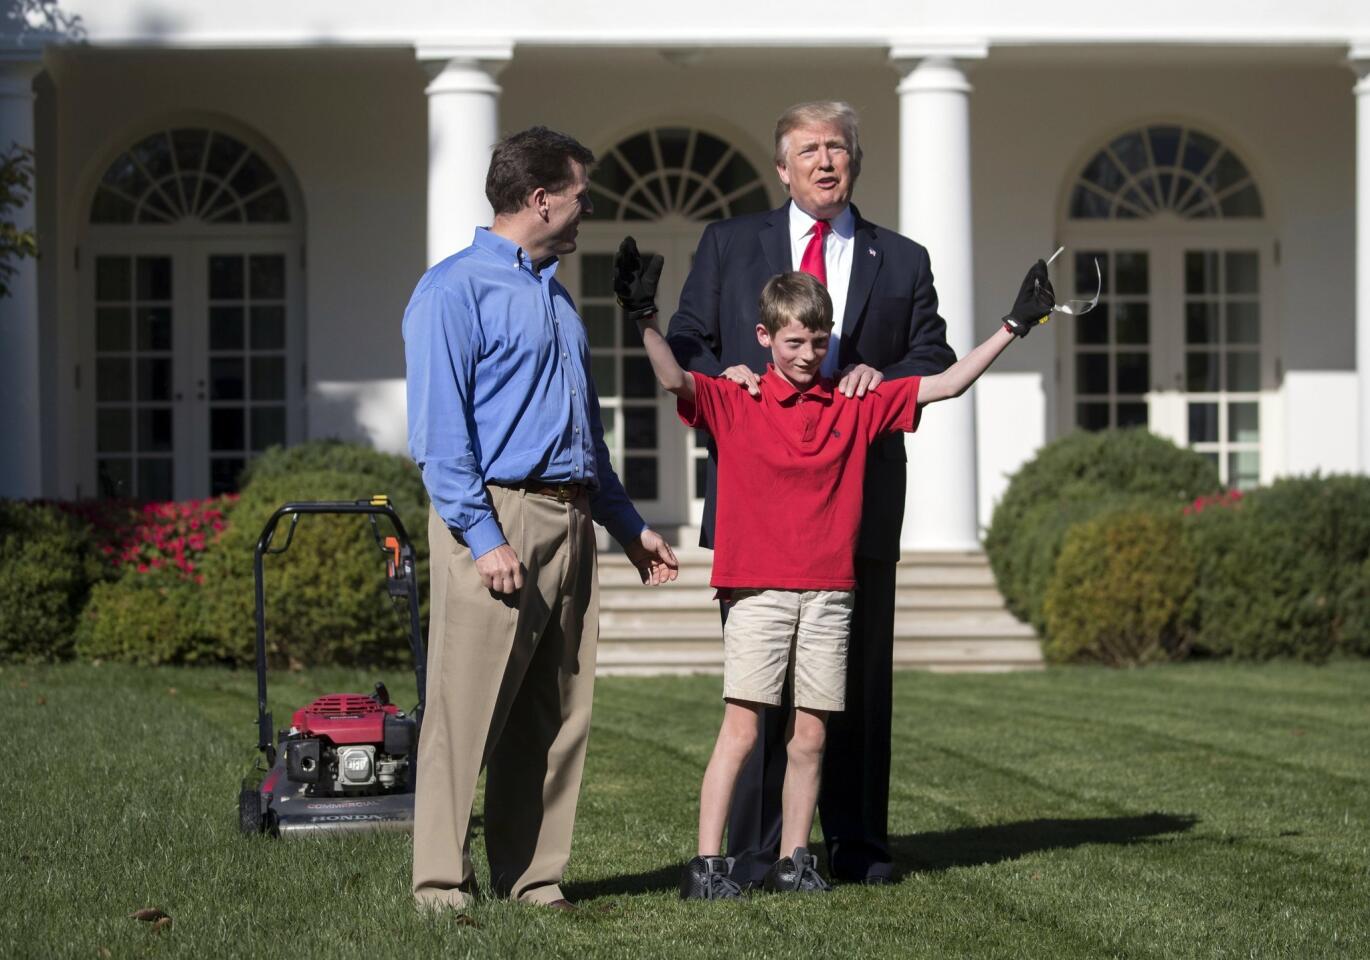 El presidente de Estados Unidos, Donald Trump (d) junto a Frank Giaccio (c), el hijo de Greg Giaccio (i), en el jardín de la Casa Blanca. Trump aceptó la oferta del pequeño de cortar el césped de la Casa Blanca.